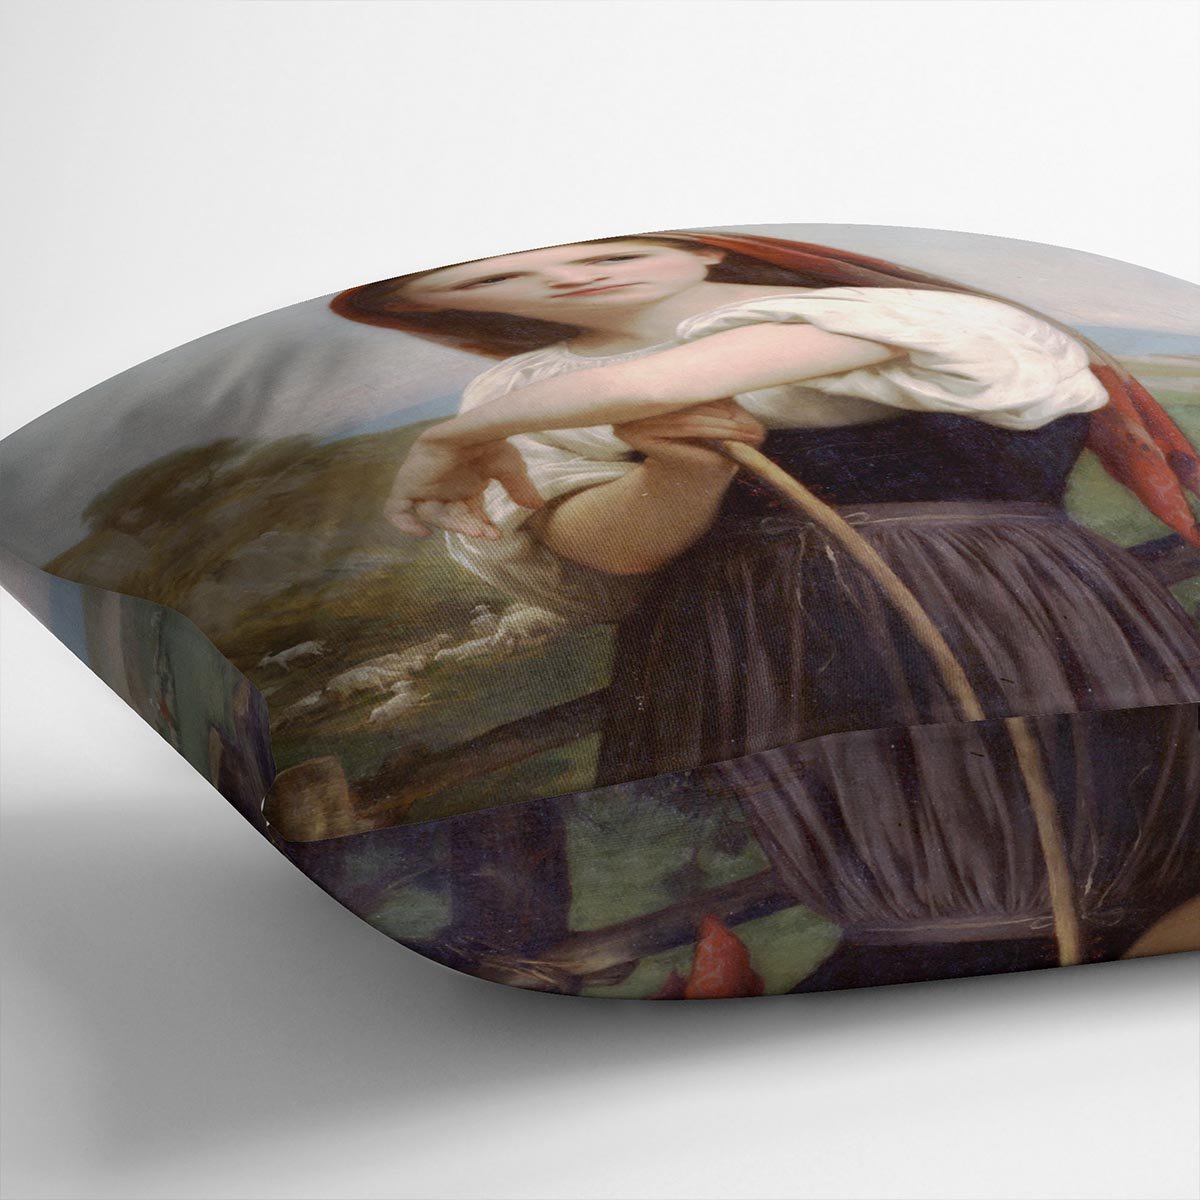 Young Shepherdess By Bouguereau Throw Pillow